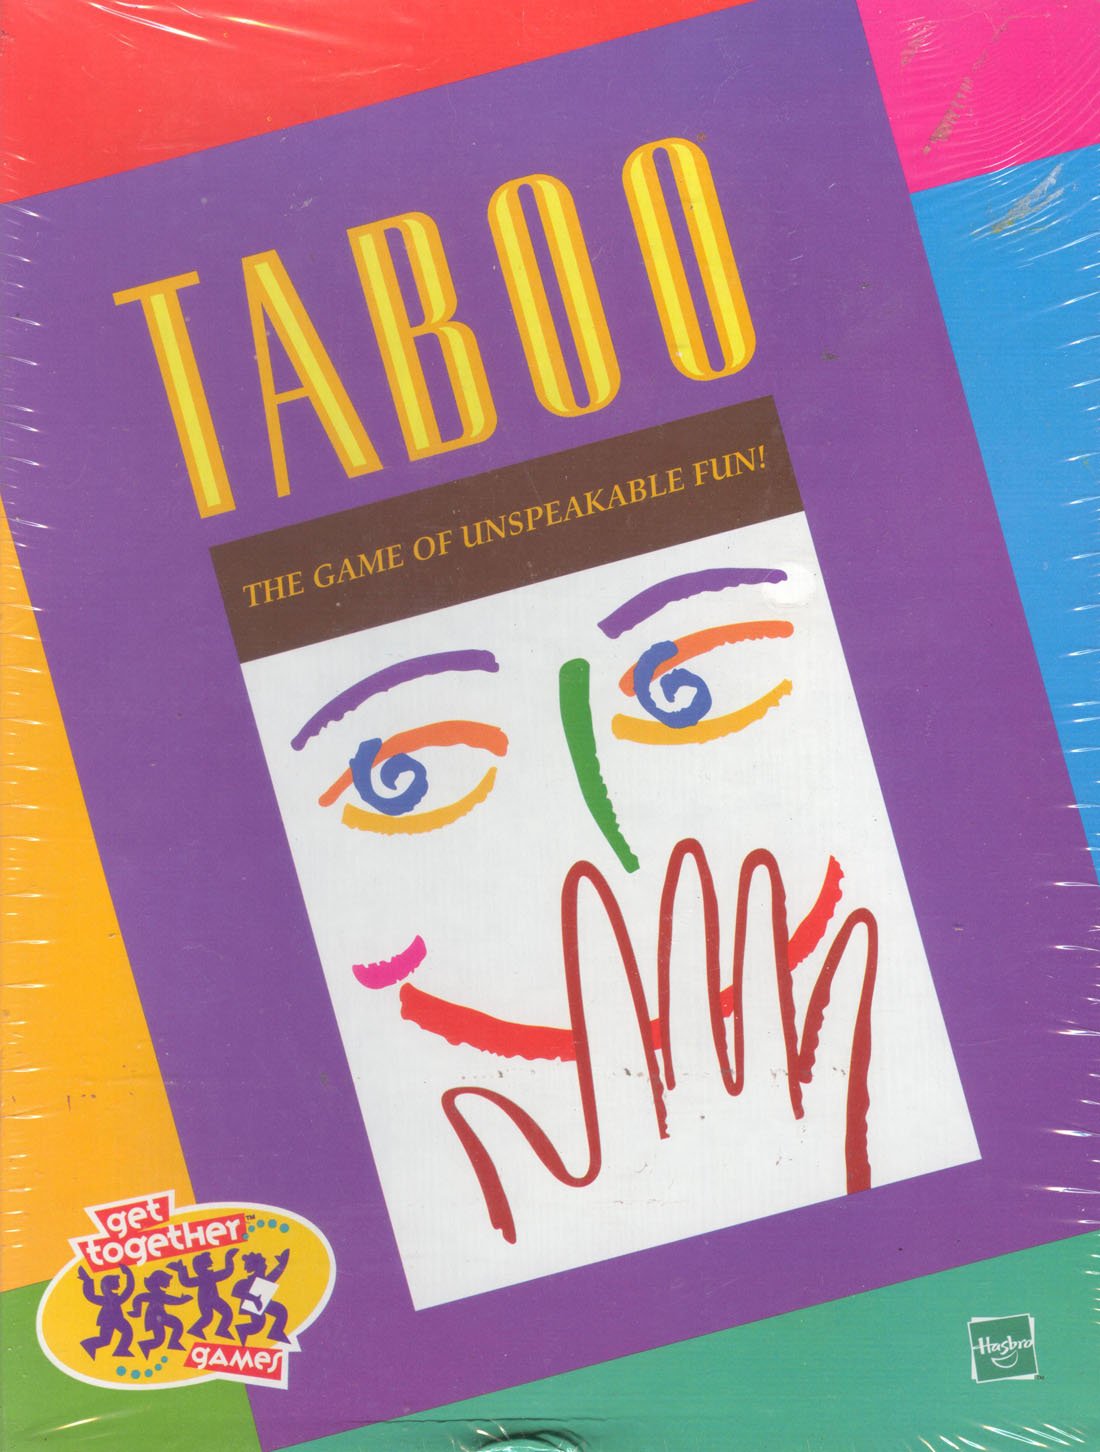 Hasbro 'Taboo' the Game of Unspeakable Fun (1999)